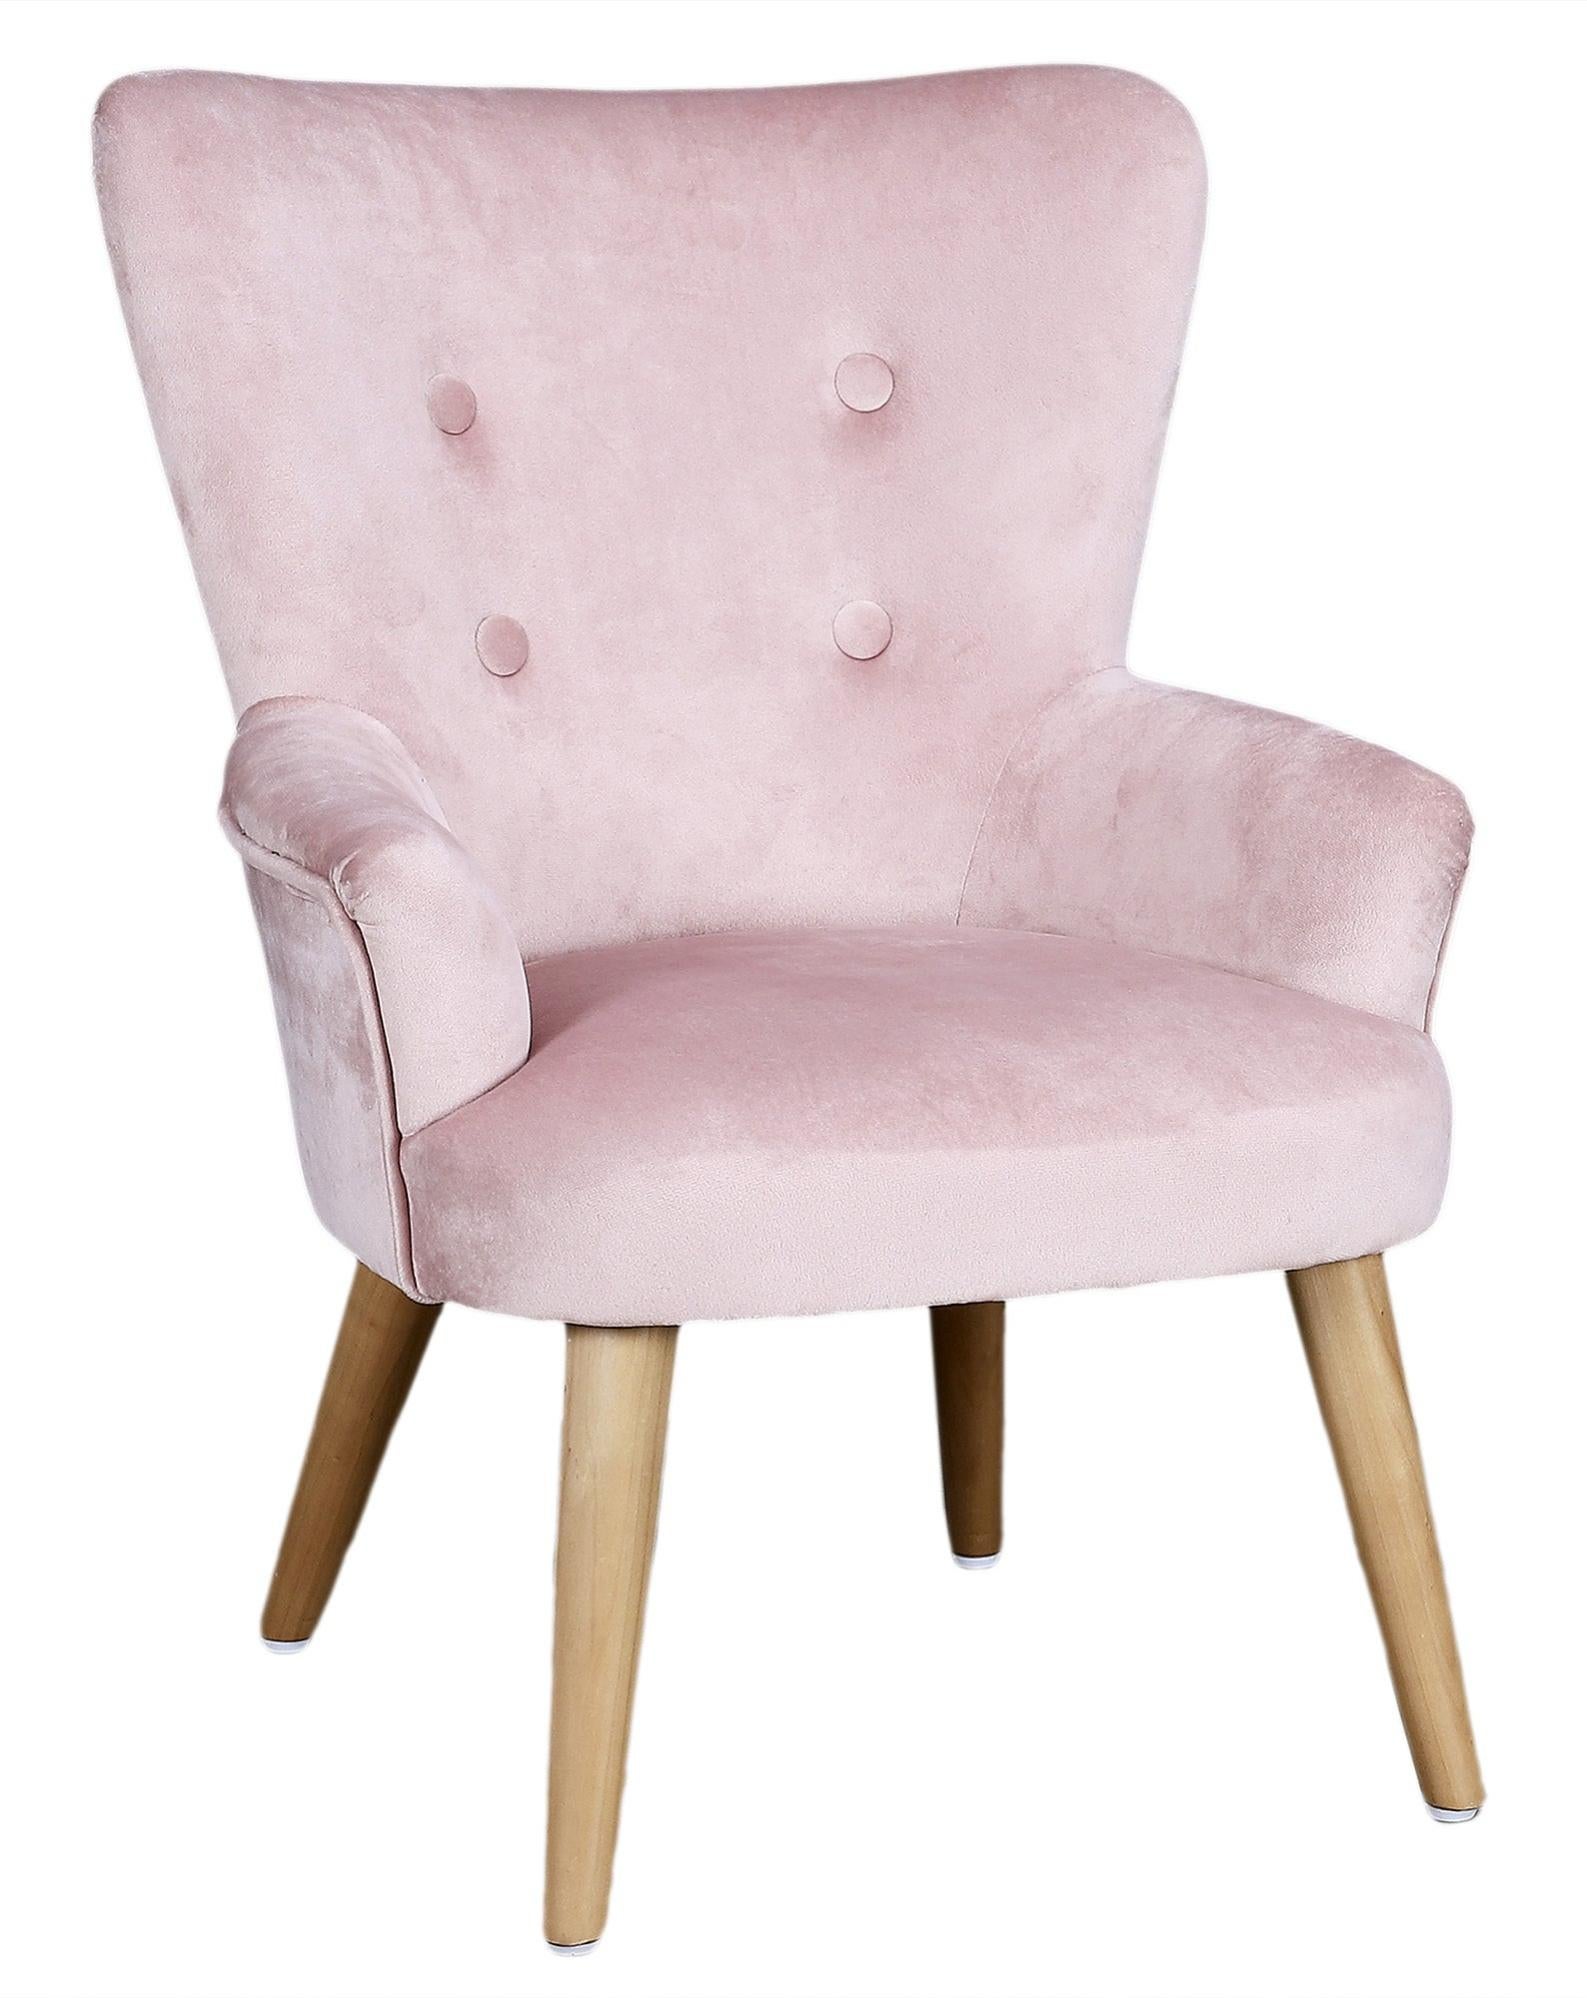 Silla infantil de madera color rosa de 63x40,5x46cm